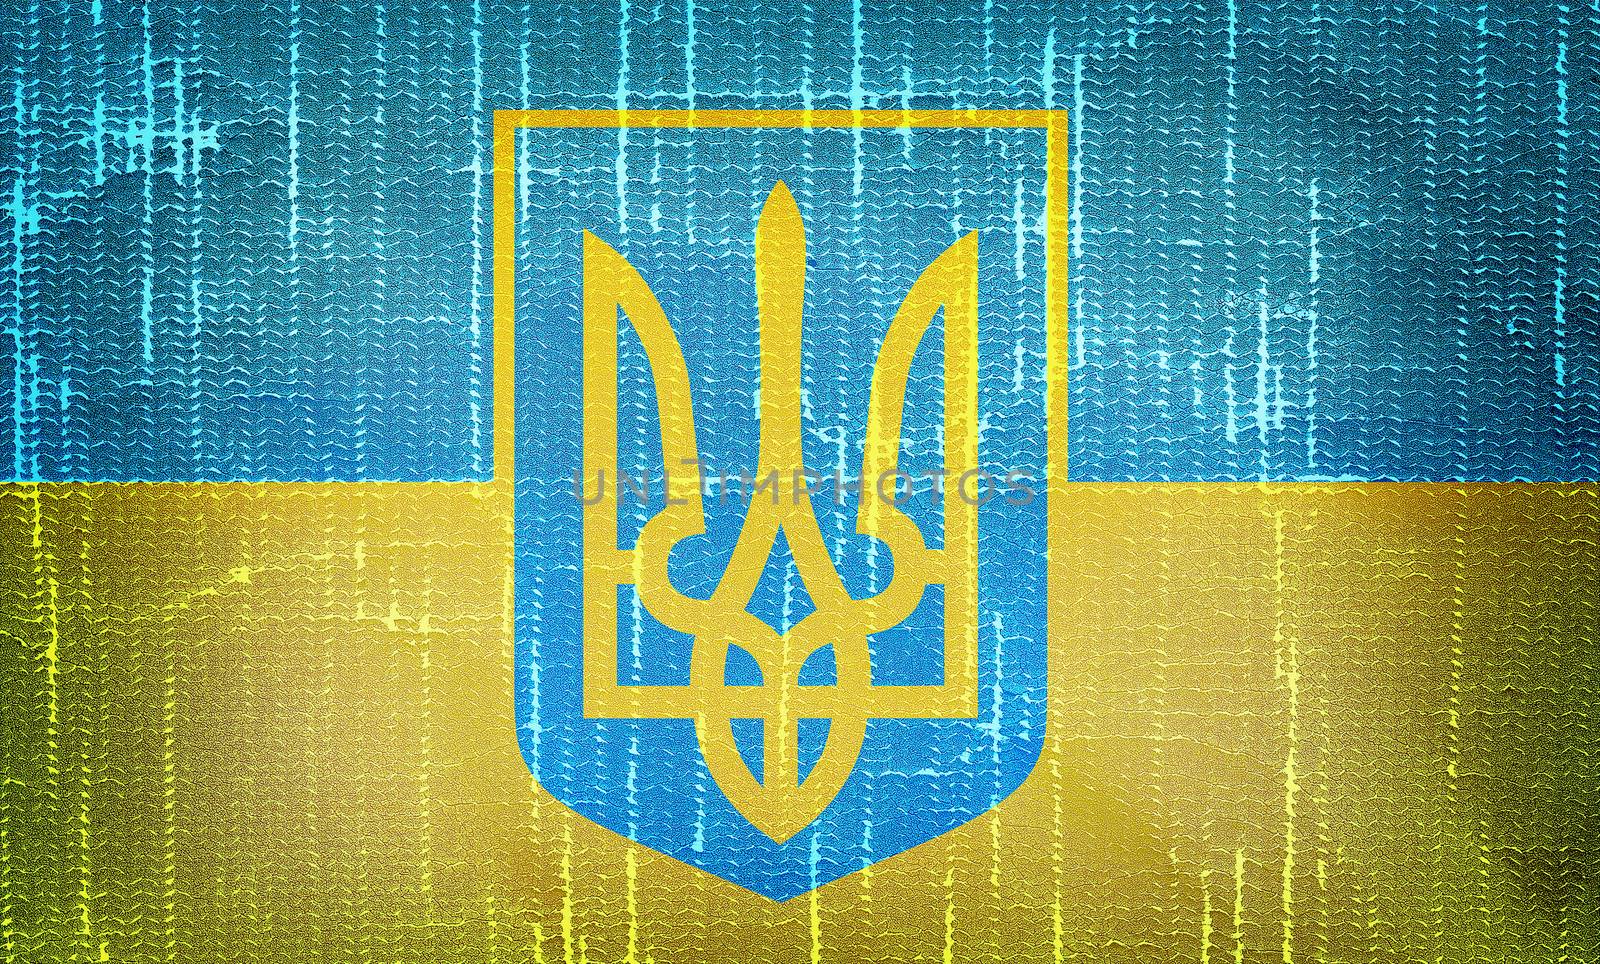 Ukrainian flag with trident on grunge  backround